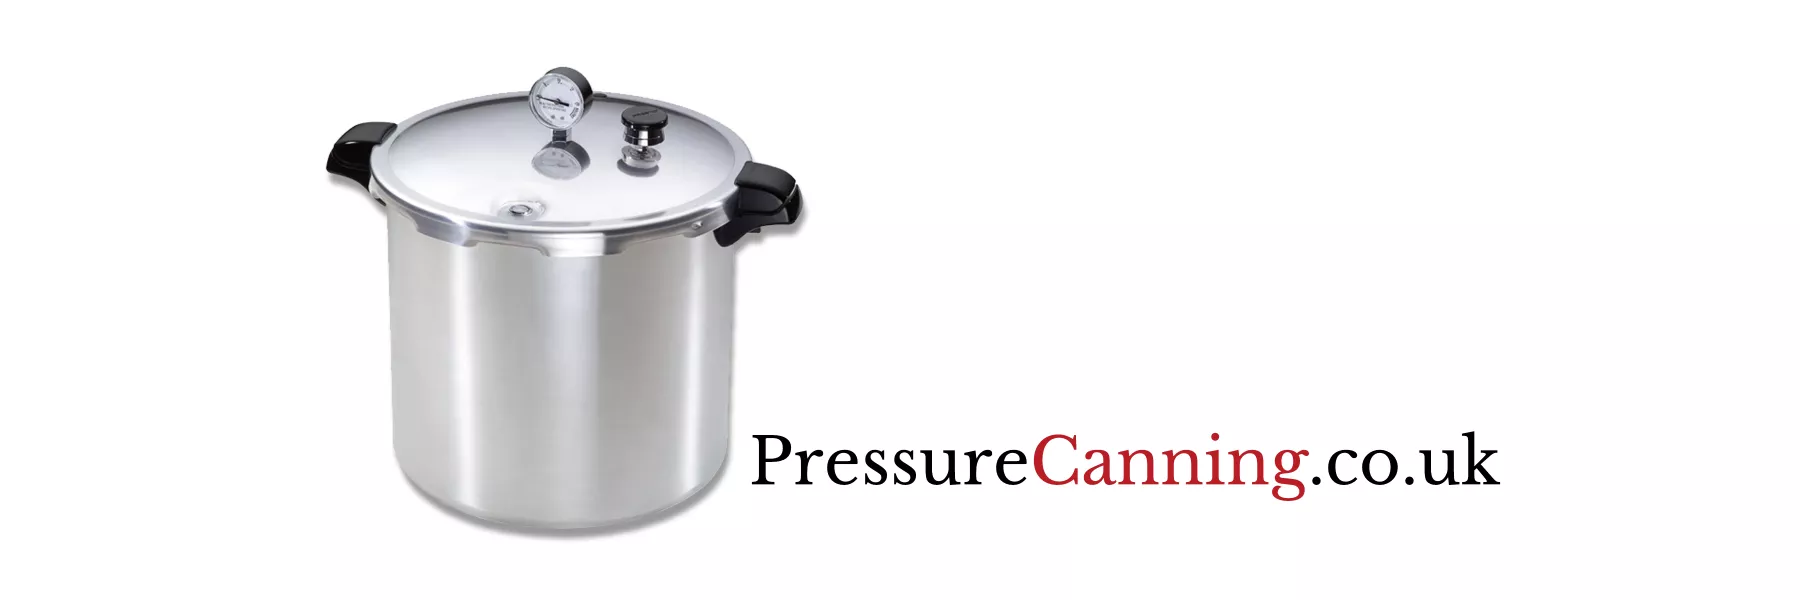 pressure canning with presto food preservation - lovejars.co.uk